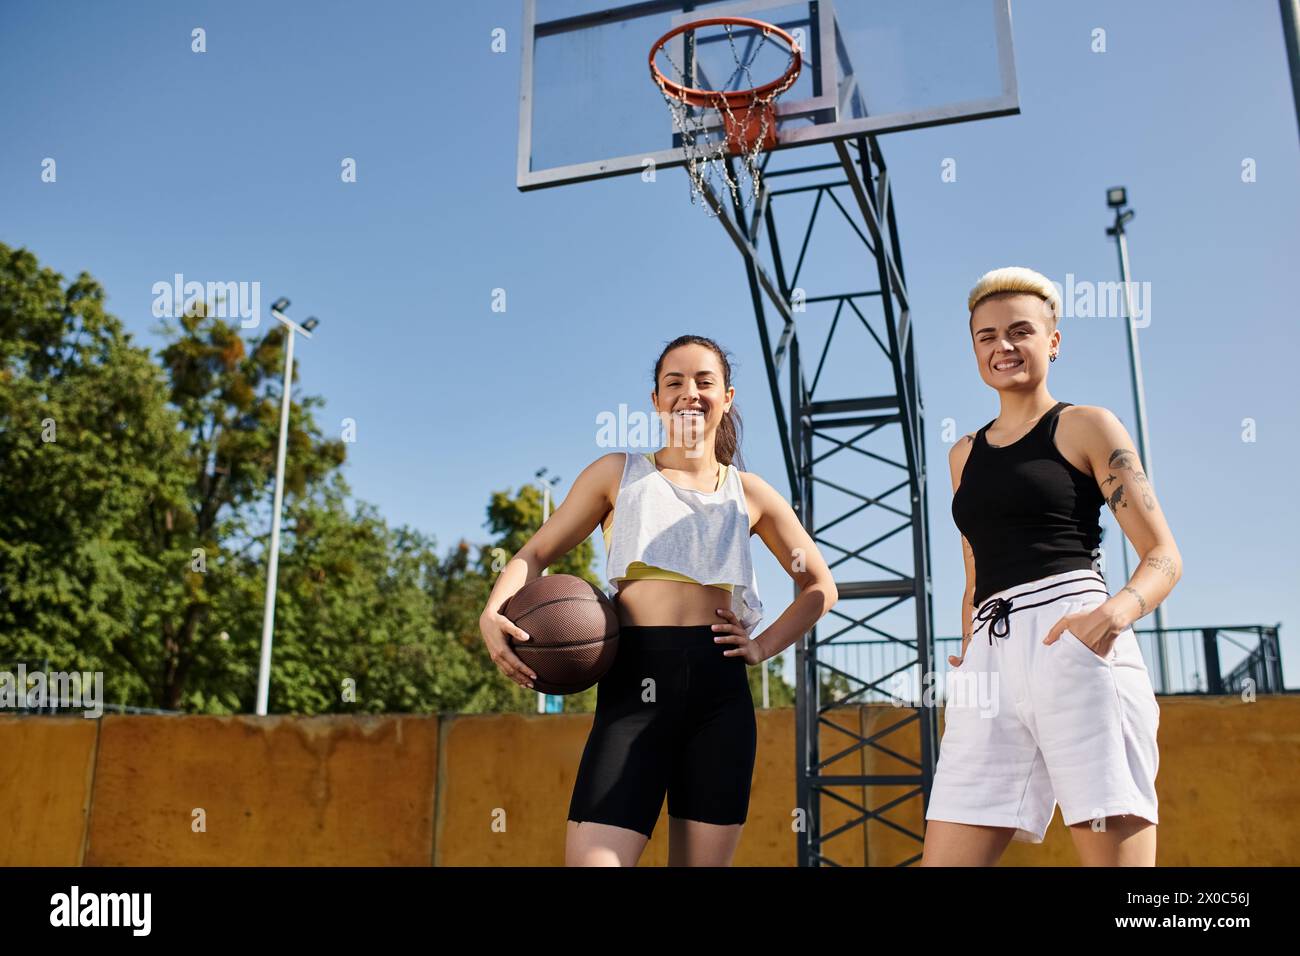 Deux jeunes femmes athlétiques jouant au basket-ball par un cerceau en plein air par une journée ensoleillée. Banque D'Images